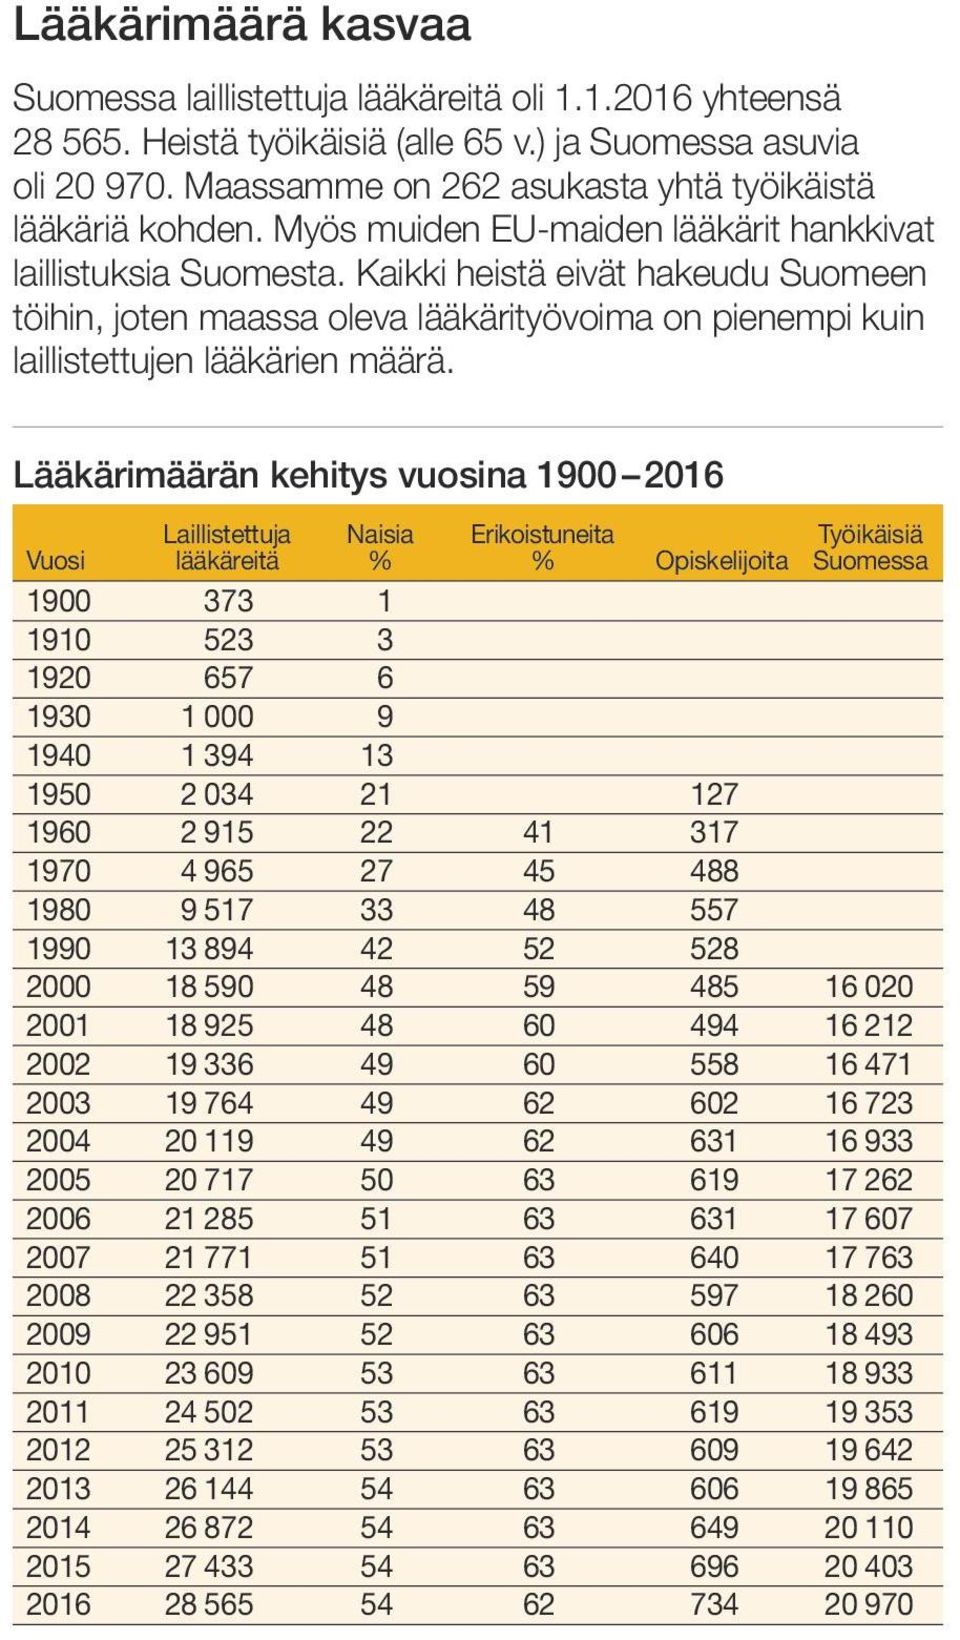 Kaikki heistä eivät hakeudu Suomeen töihin, joten maassa oleva lääkärityövoima on pienempi kuin laillistettujen lääkärien määrä.